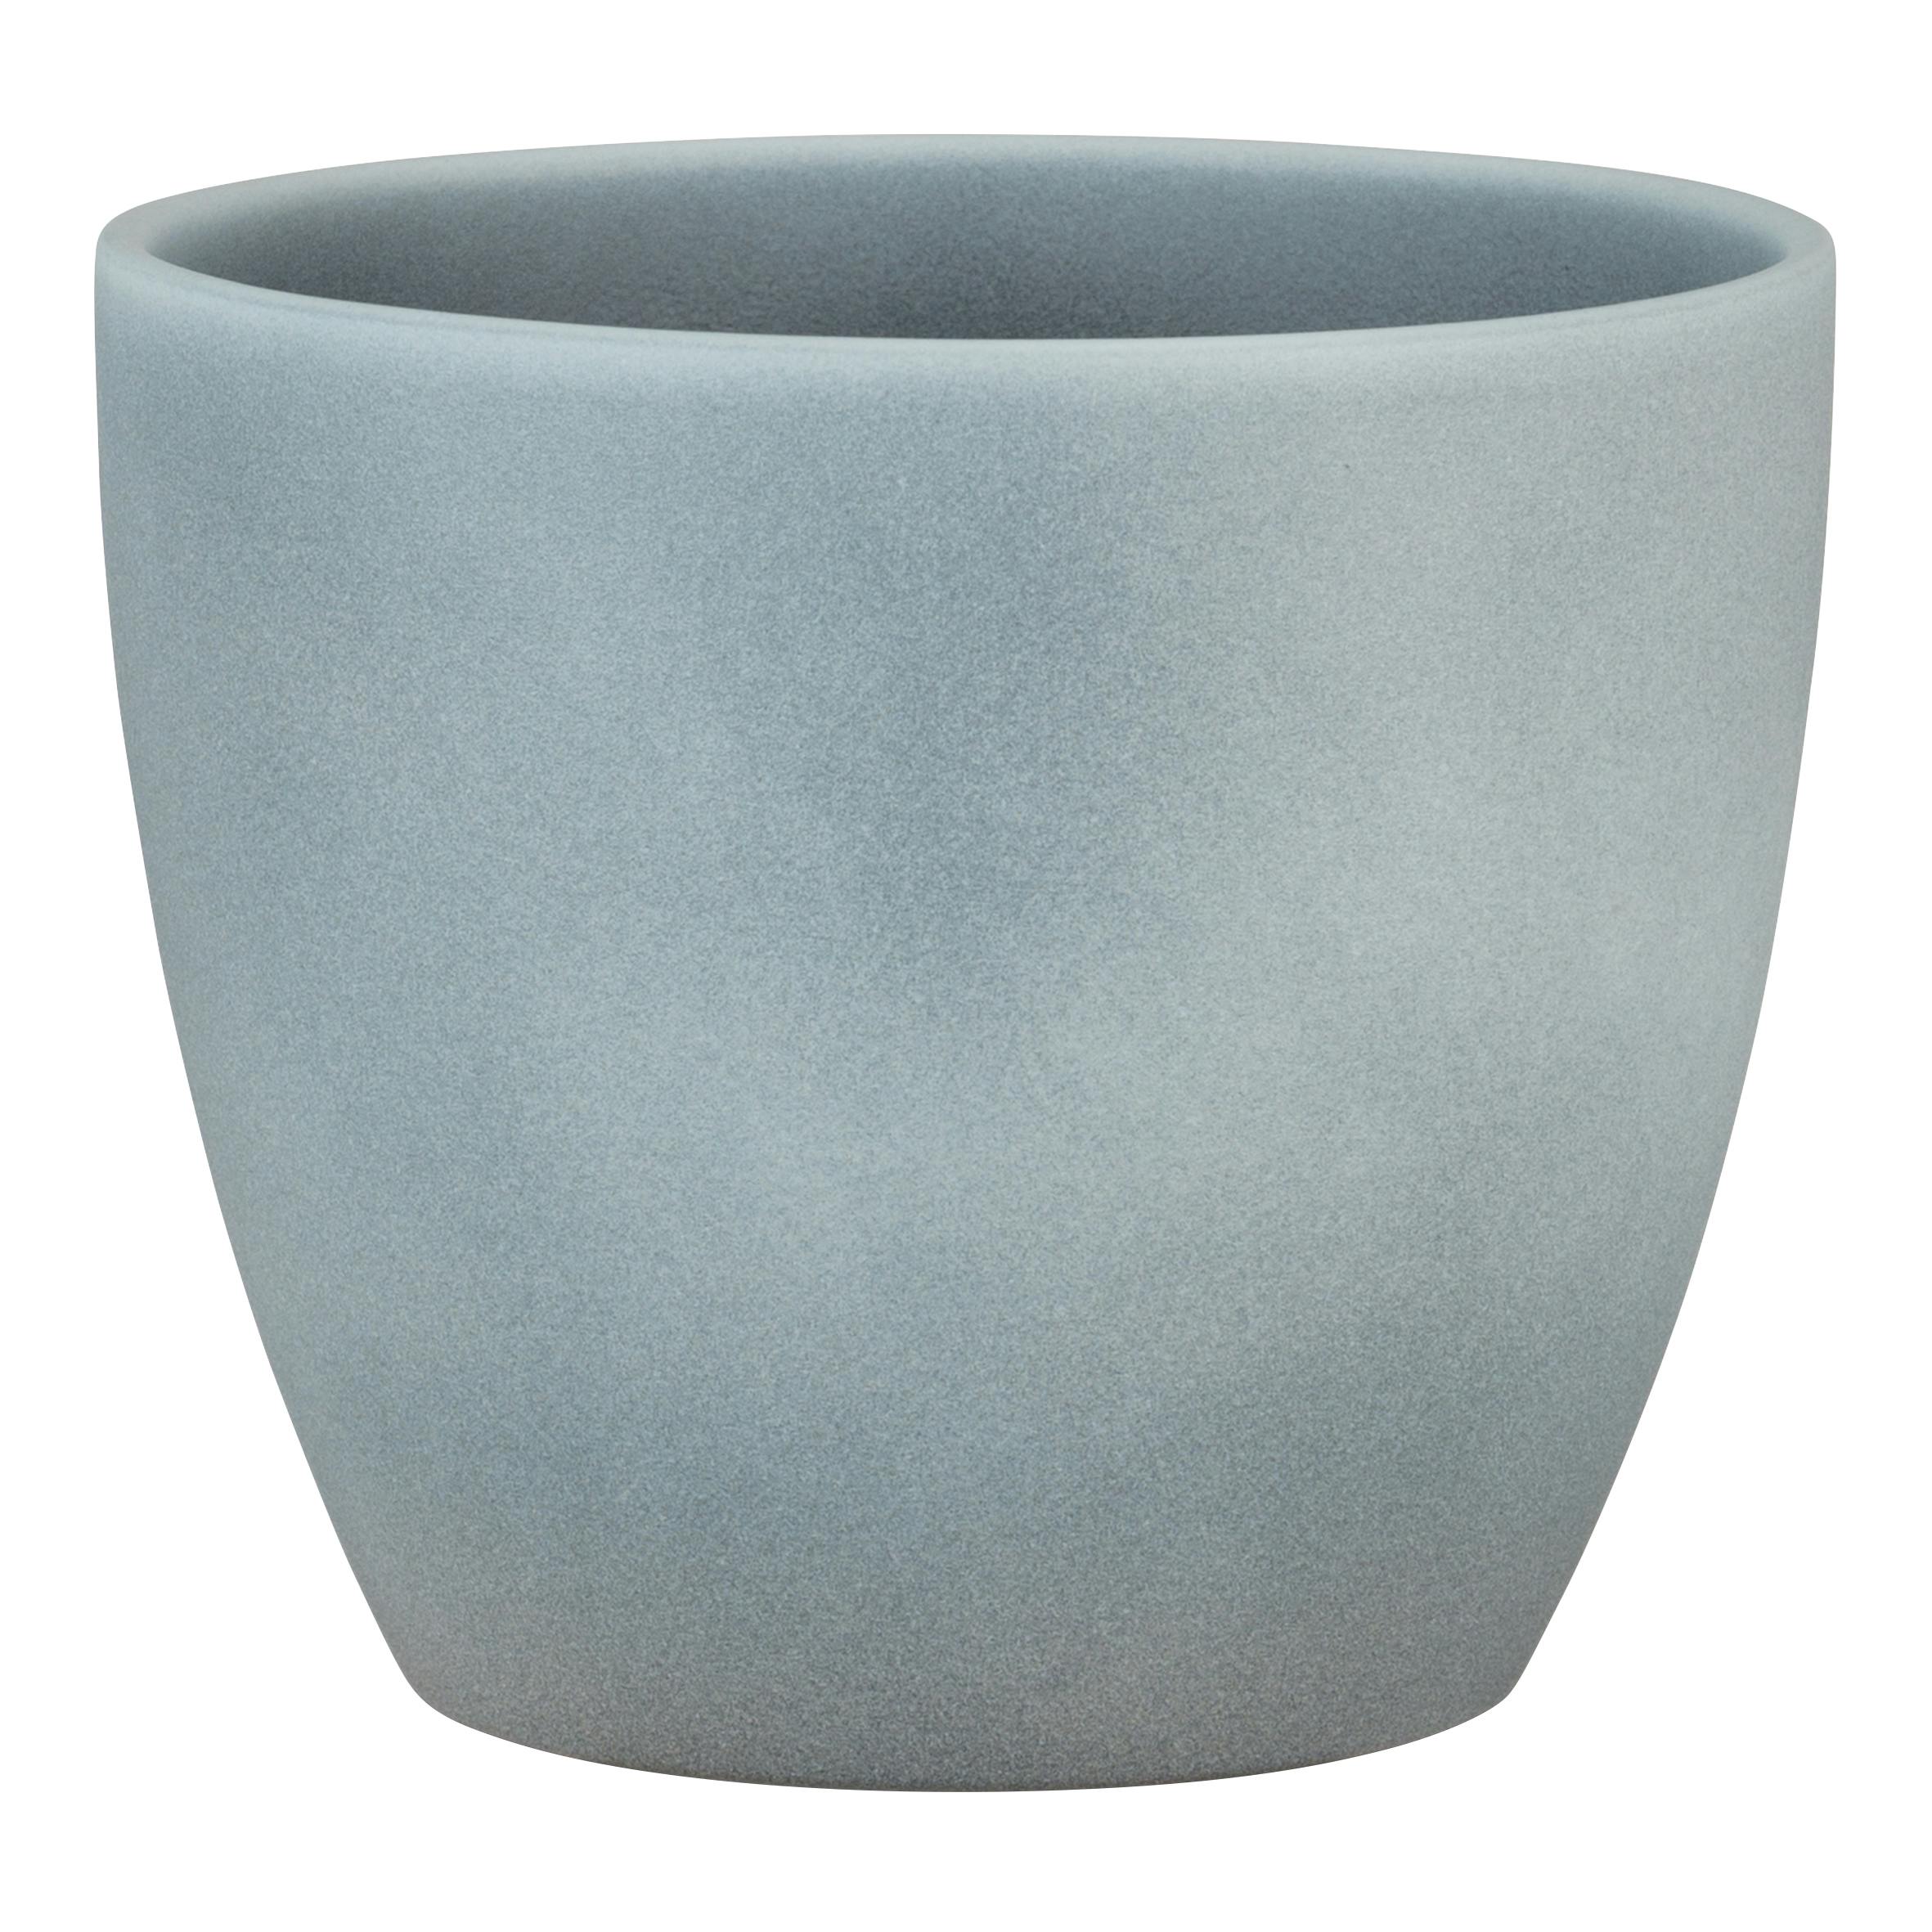 Scheurich Stone, Blumentopf aus Keramik, Farbe: Grey Stone, 22 cm  Durchmesser, 19.5 cm hoch, 5.5 l Vol. | METRO Marktplatz